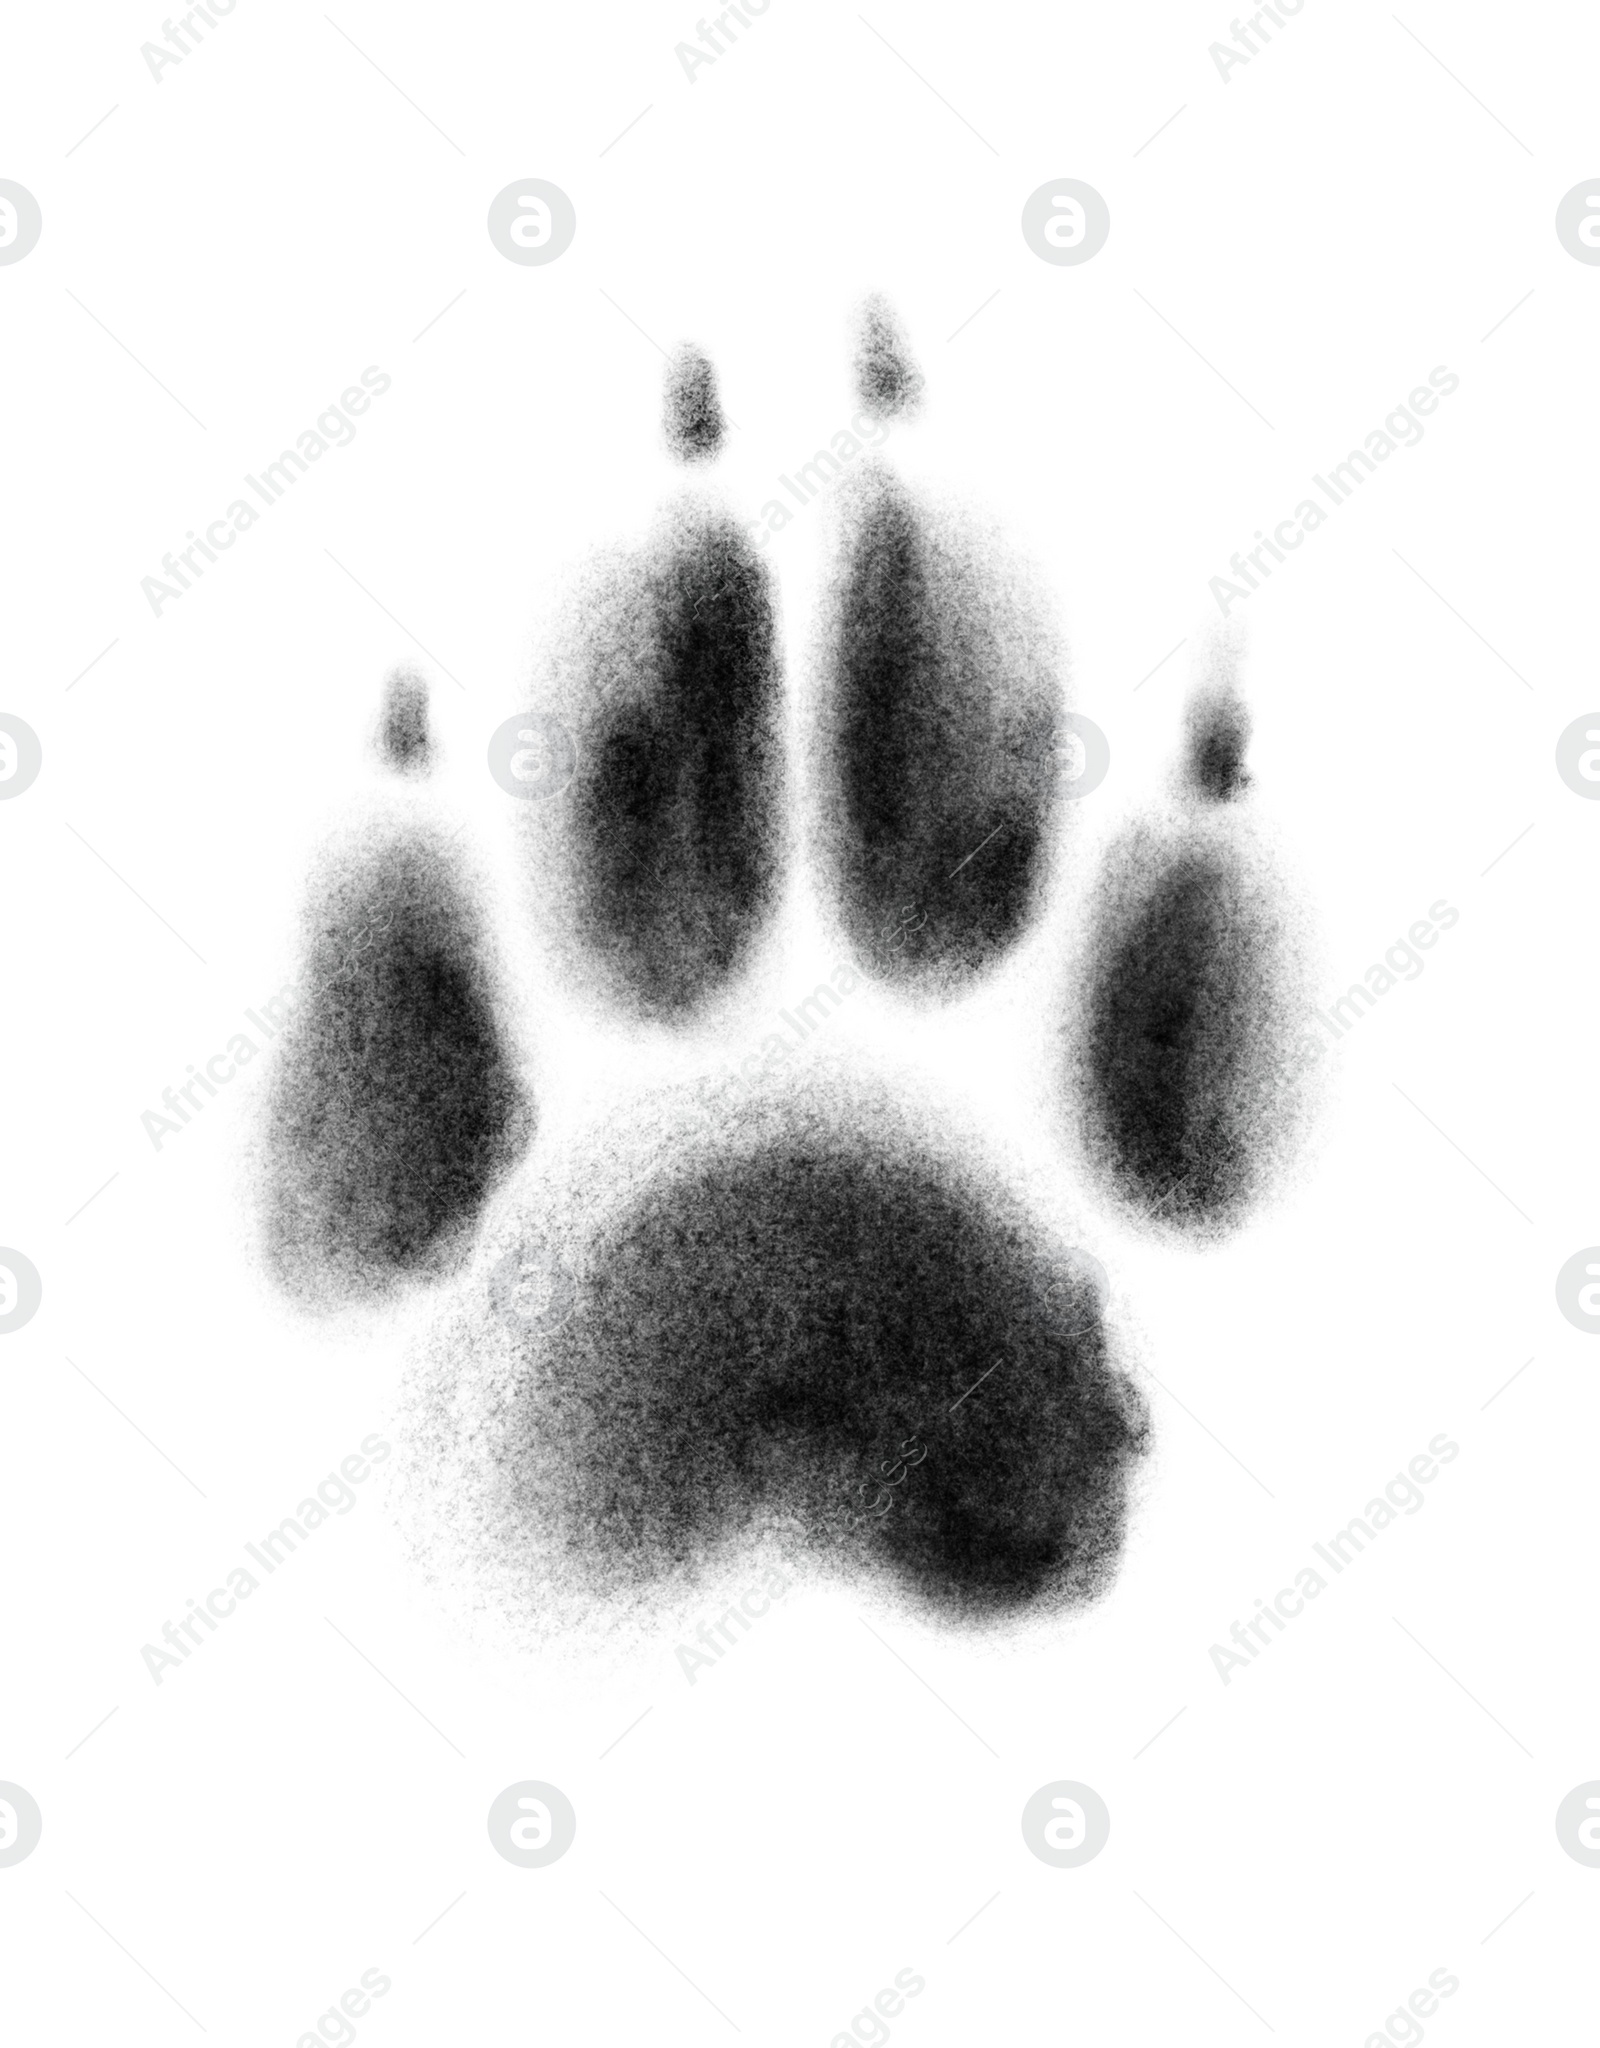 Image of One dog paw print on white background, illustration